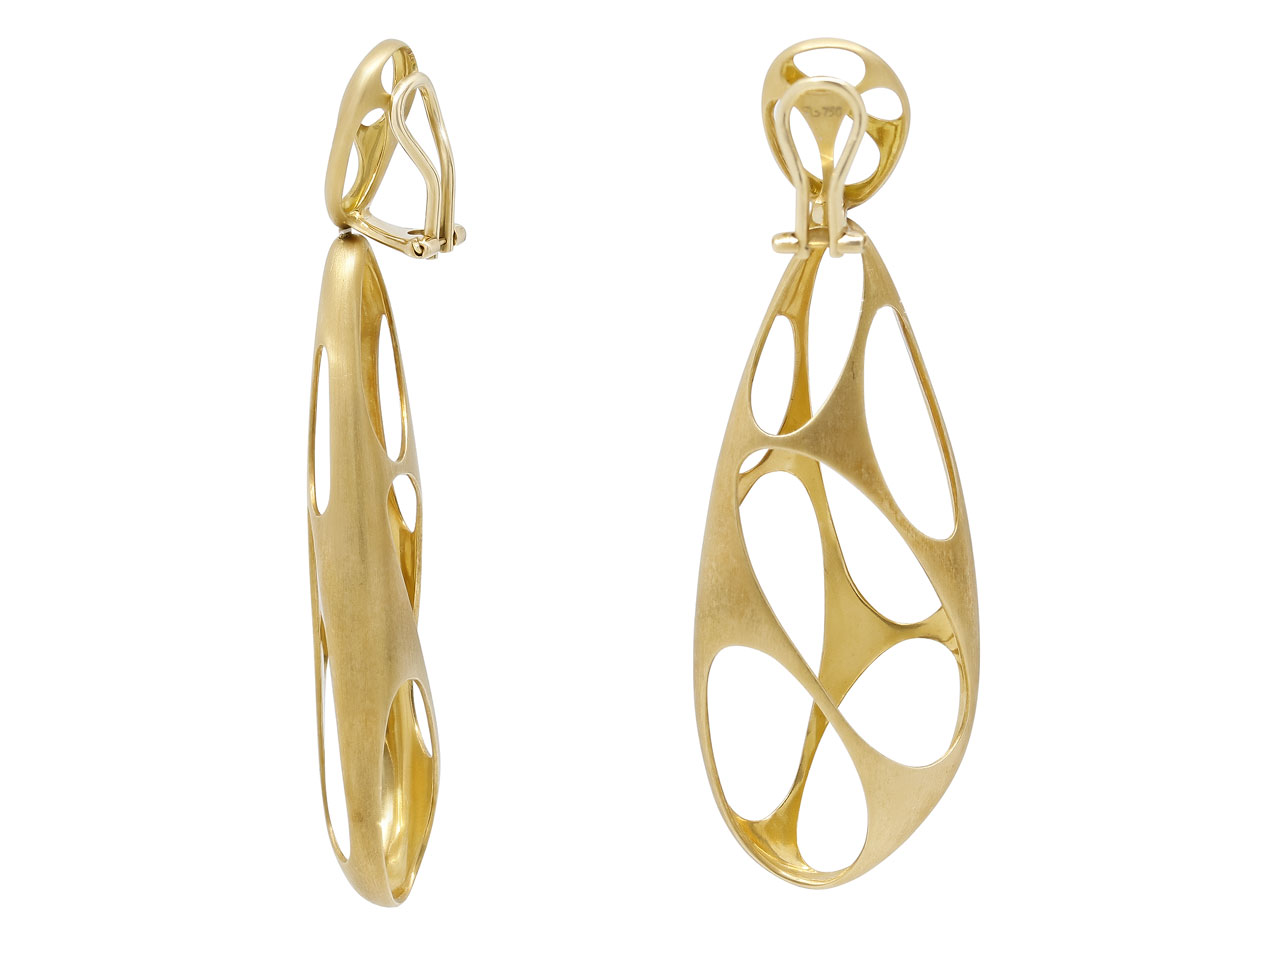 Modernist Drop Earrings in 18K Gold